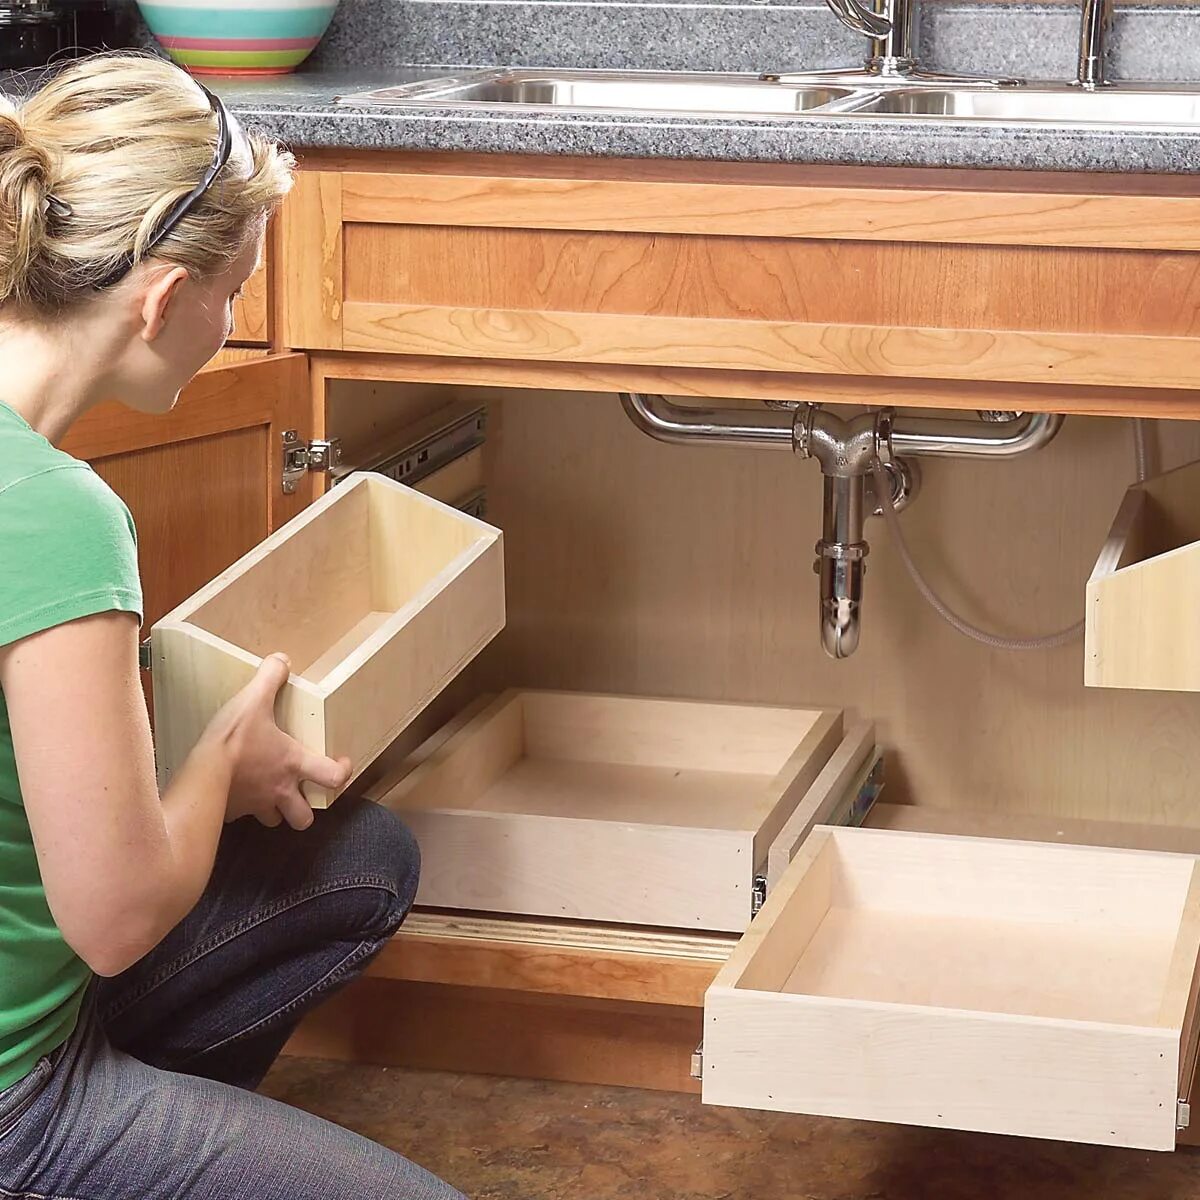 Ящик под мойку для кухни. Выдвижной ящик под мойку. Выдвижные ящики под раковиной на кухне. Выдвижной ящик под мойку для кухни. Как собирать выдвижные шкафы